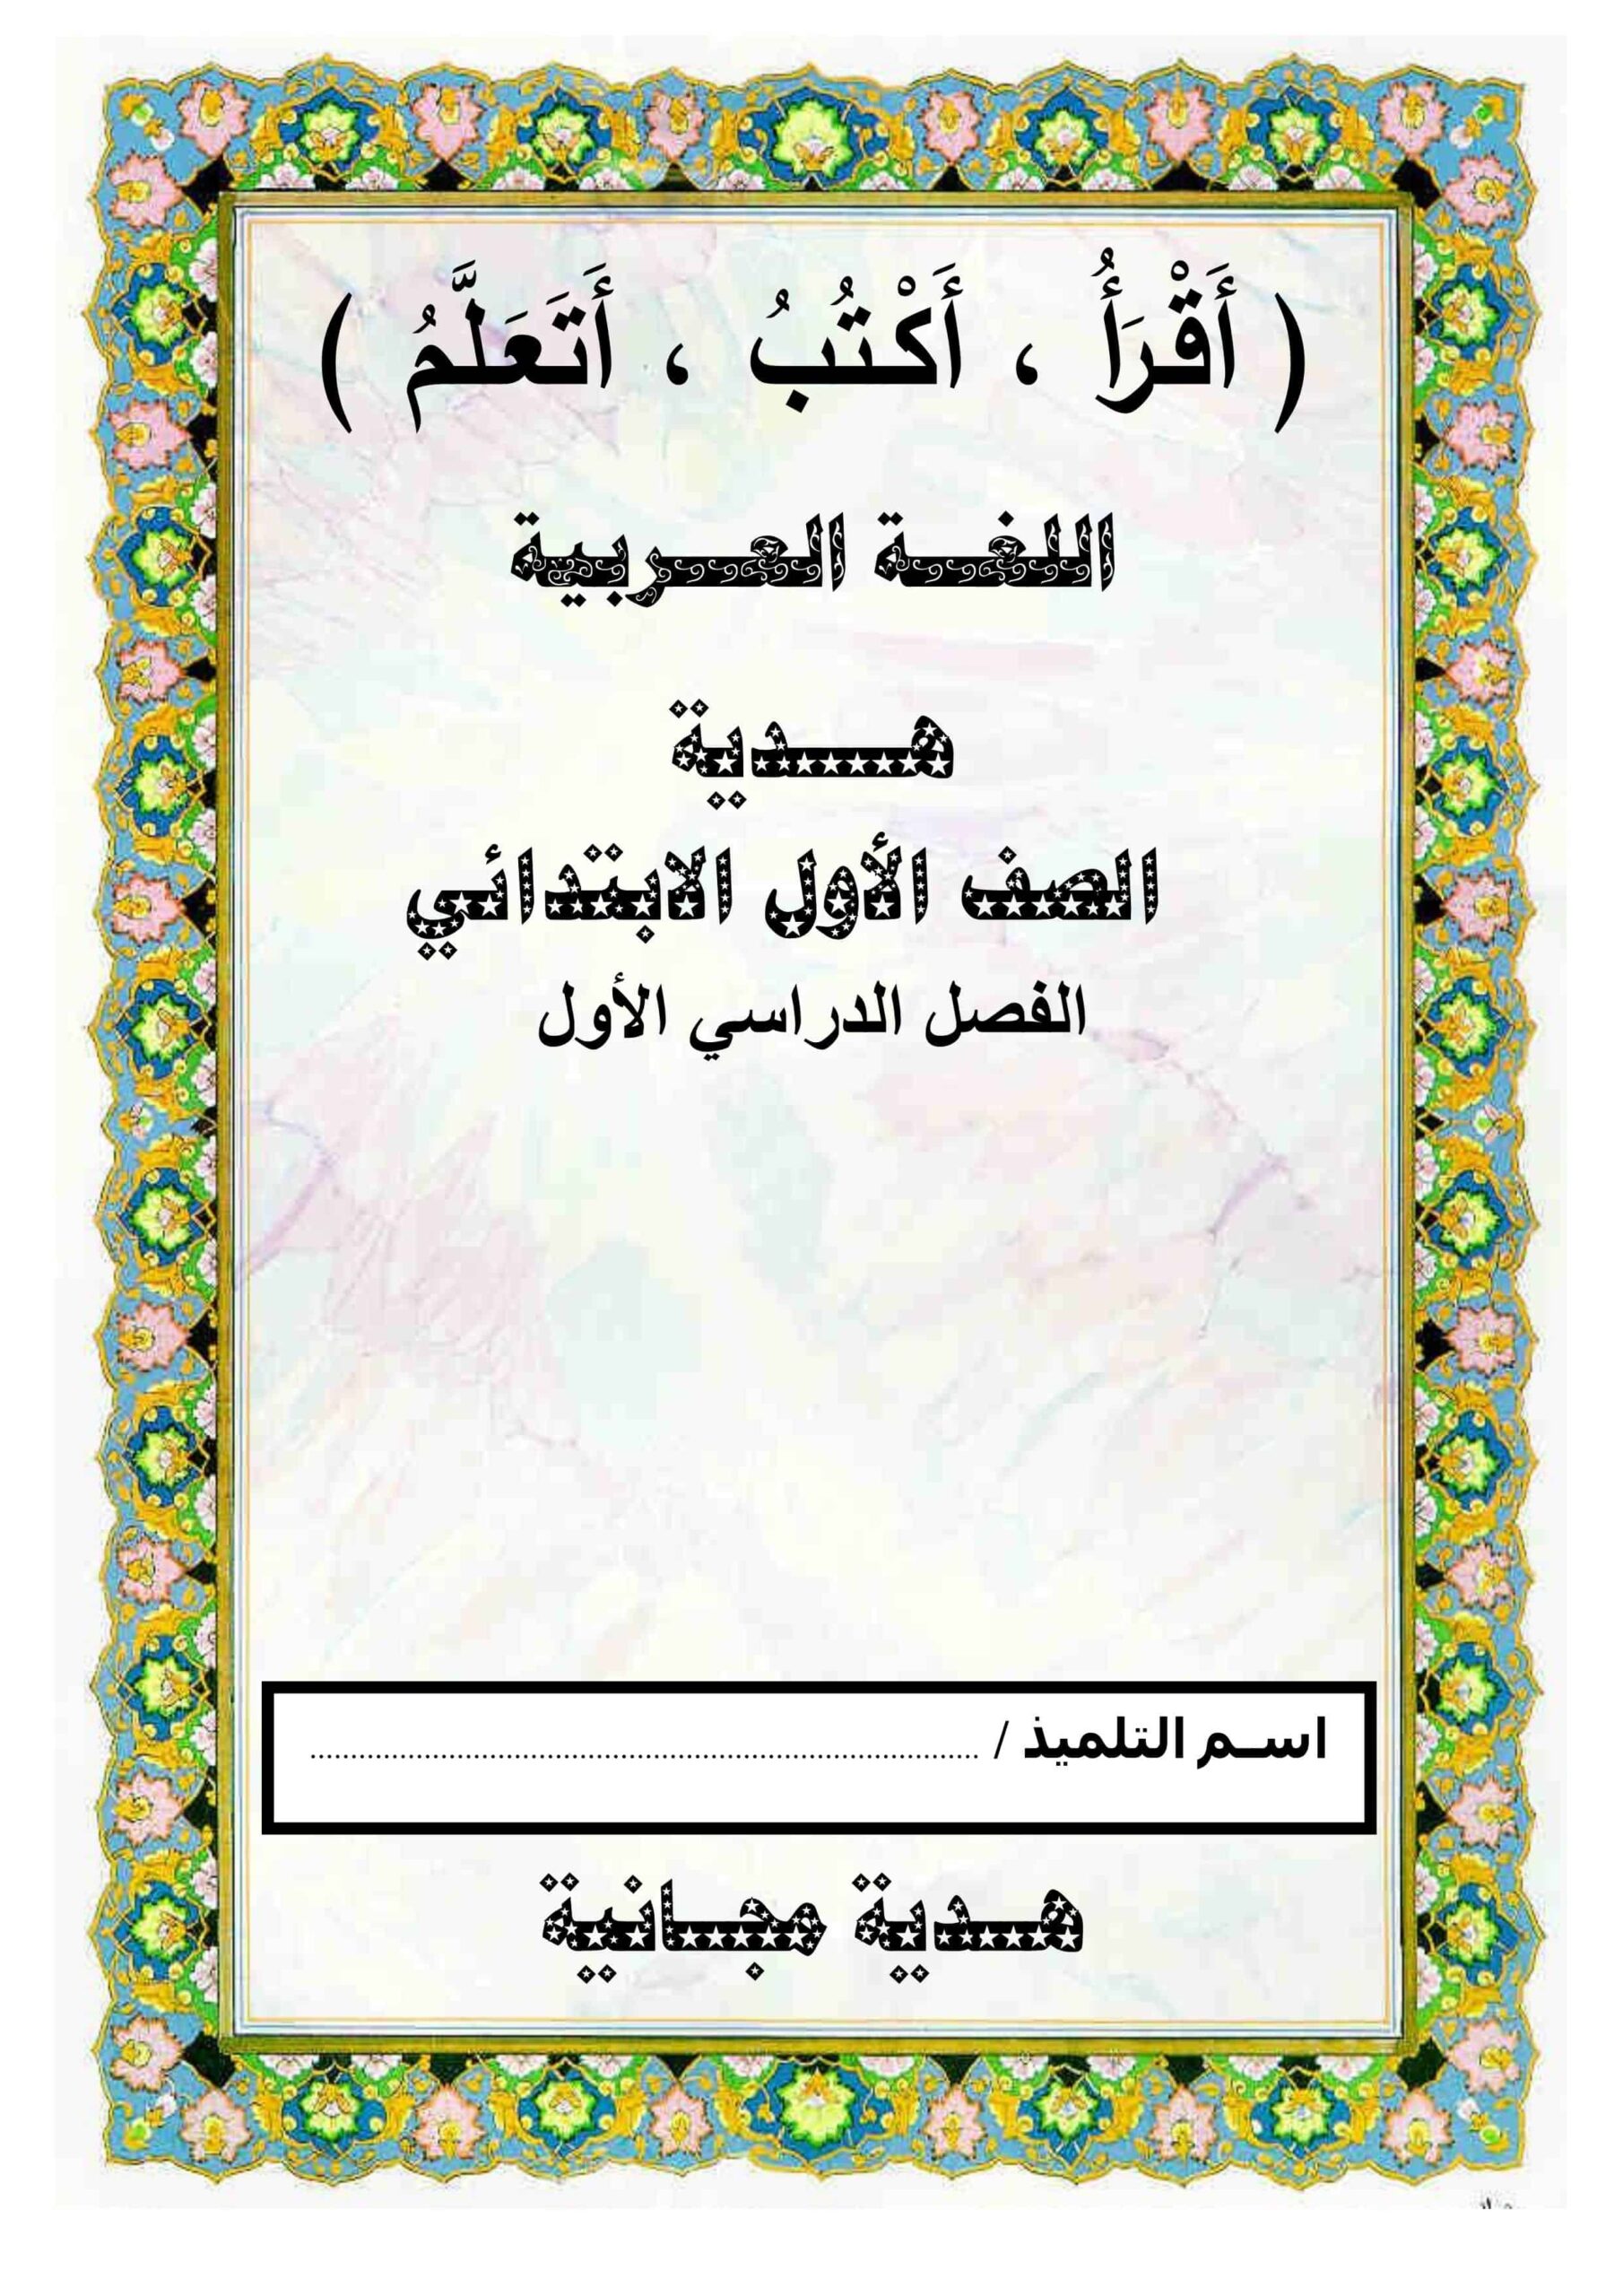 مذكرة أقرأ وأكتب وأتعلم اللغة العربية الصف الأول